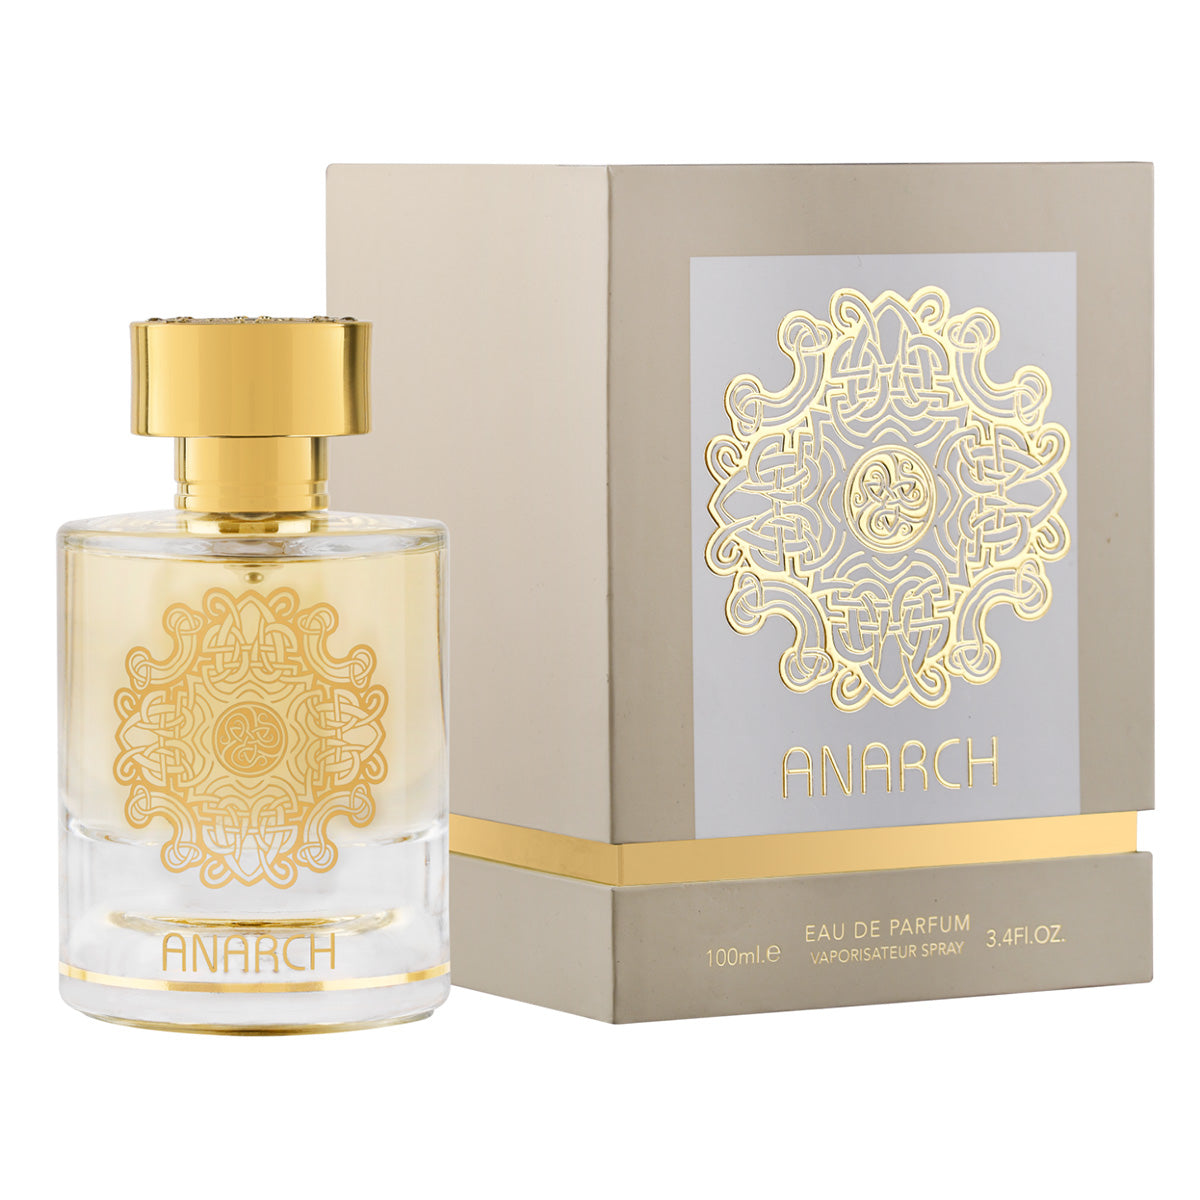 Anarch Eau de Parfum 100ml Alhambra